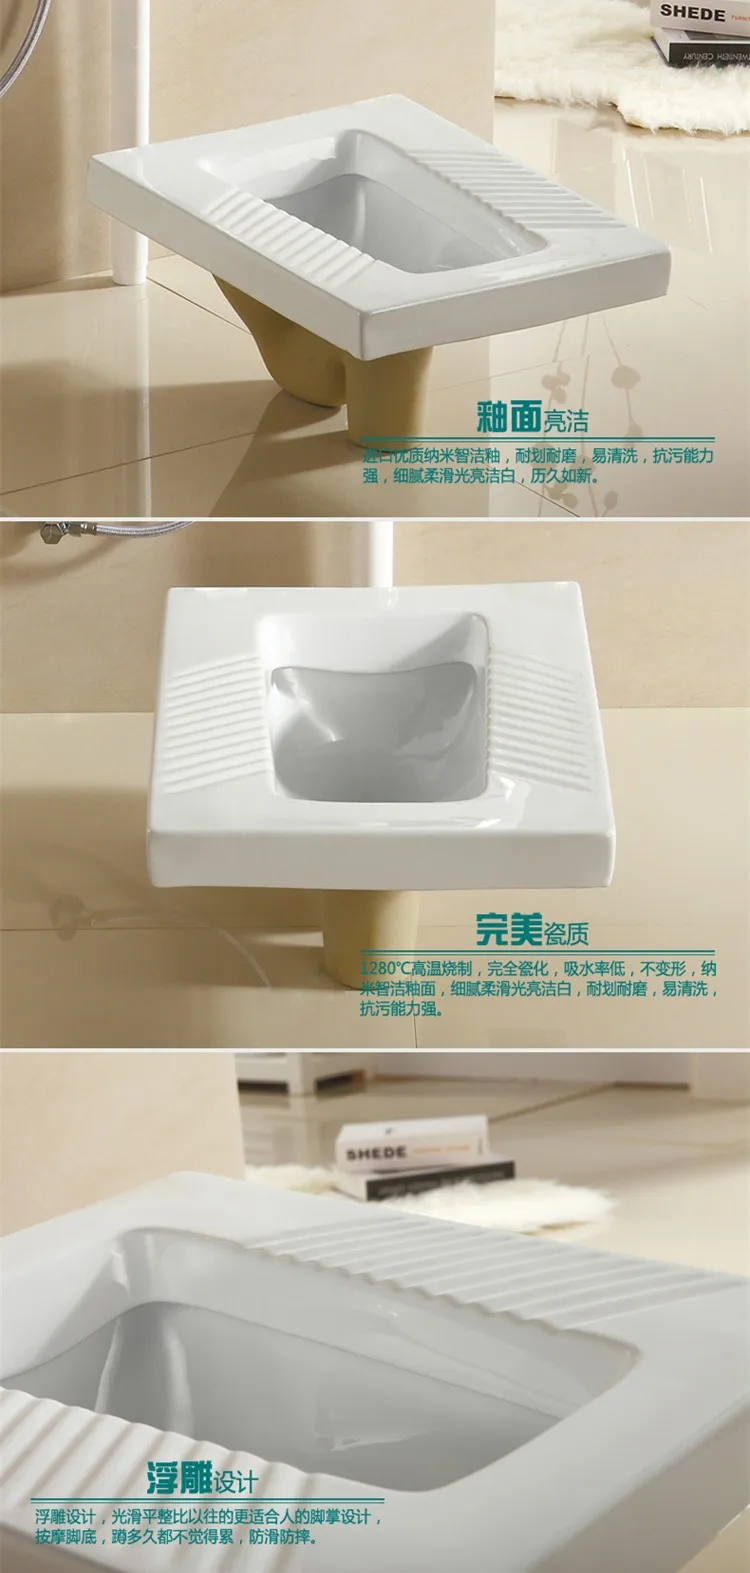 Bathroom water closet ceramic squatting pan